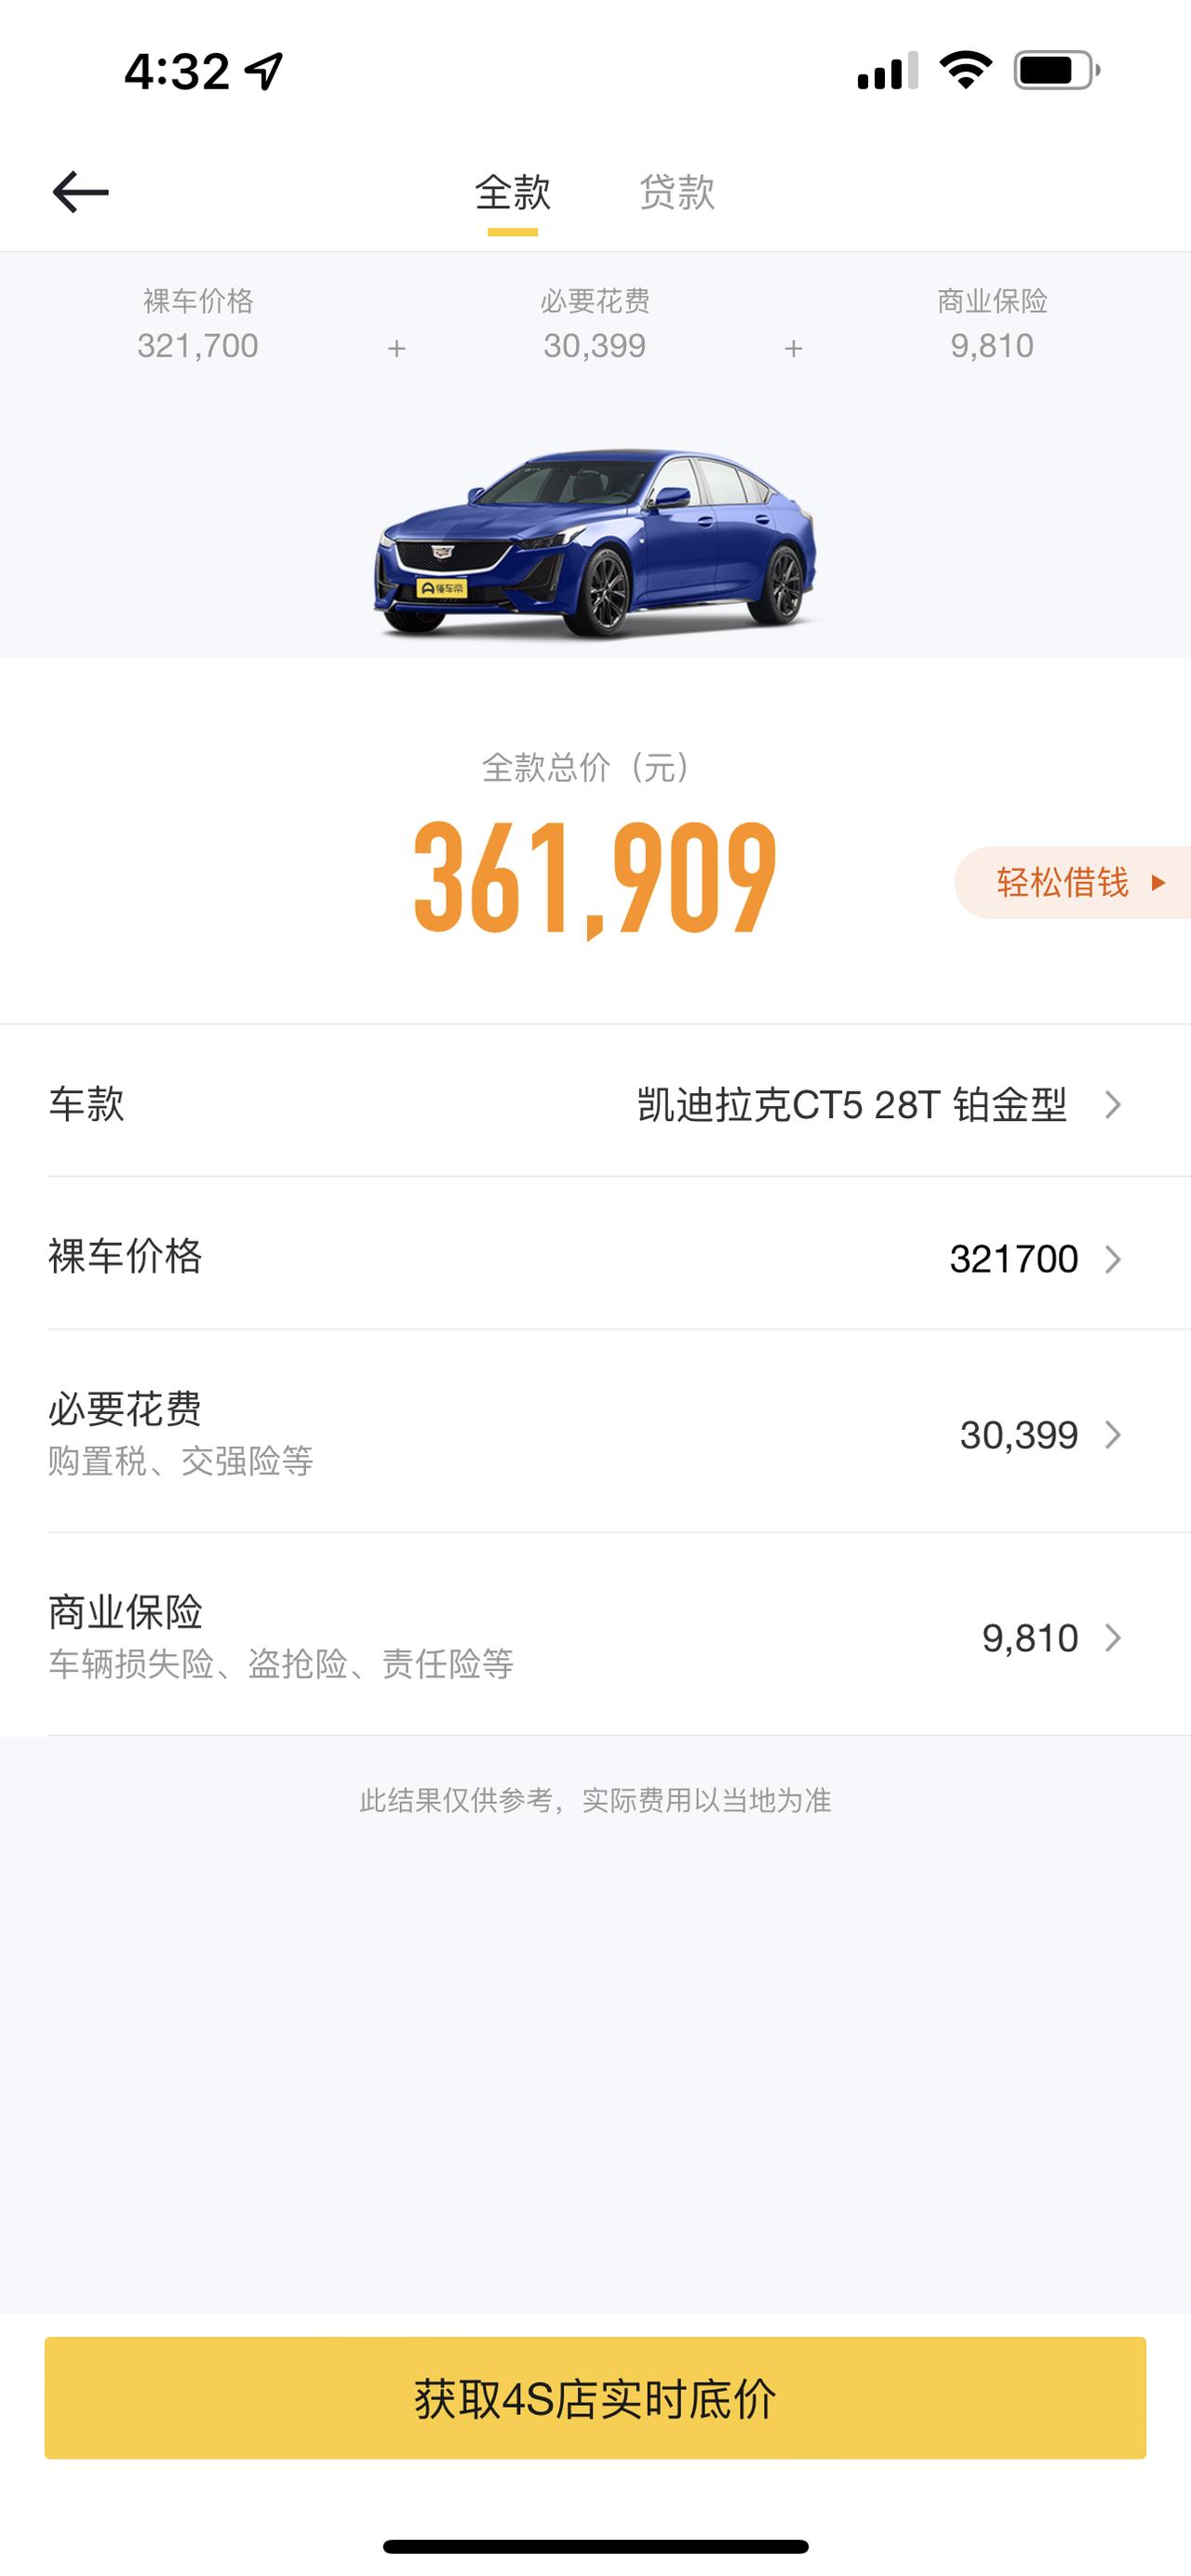 凯迪拉克CT5 上海地区铂金那么贵有没有最近上海提车的分享价格